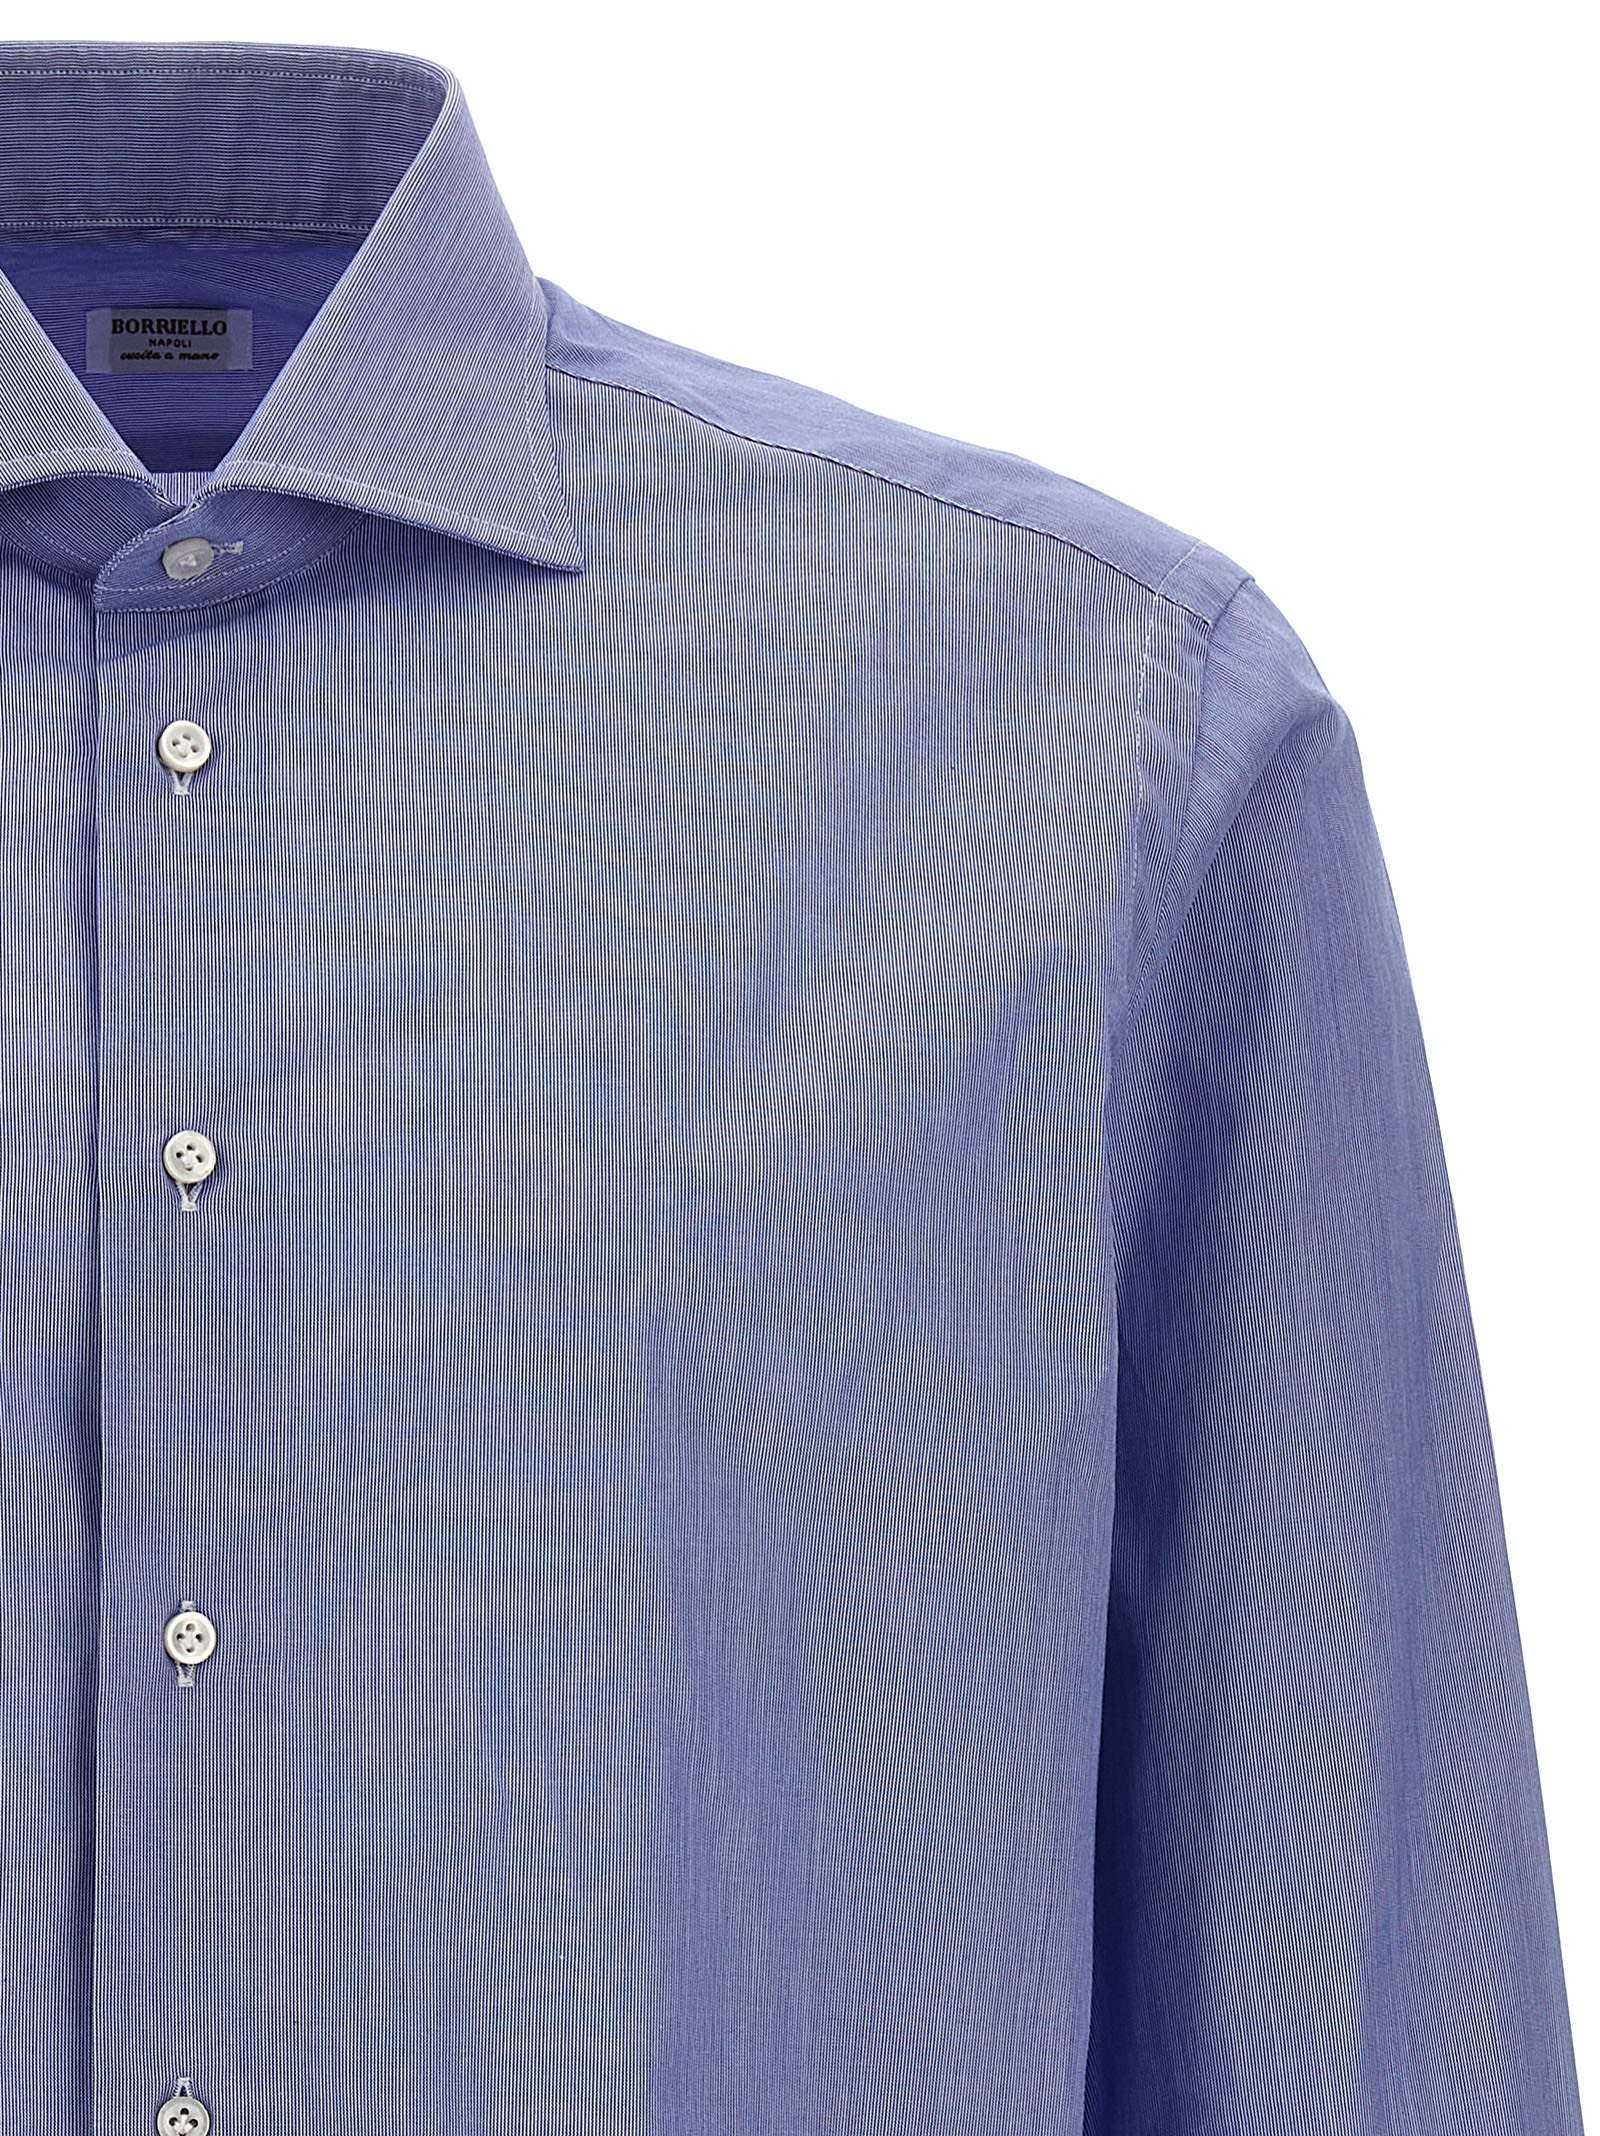 Shop Borriello Napoli Falso Unito Cotton Shirt In Light Blue